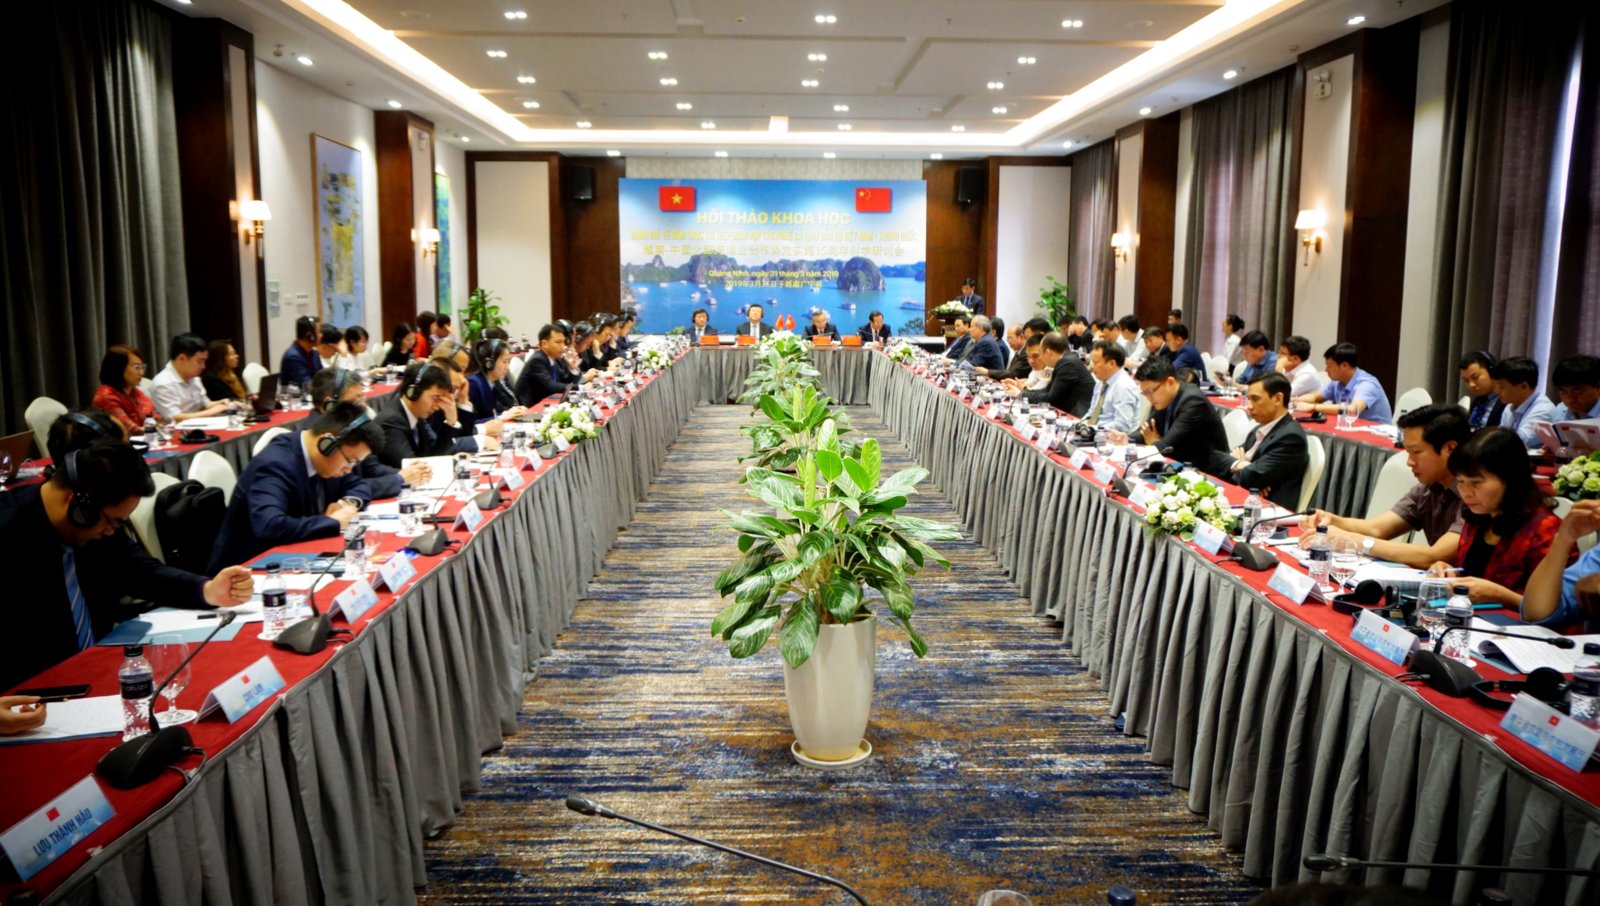 Hội thảo khoa học đánh giá 15 năm thực thi Hiệp định hợp tác nghề cá Vịnh Bắc Bộ Việt Nam - Trung Quốc